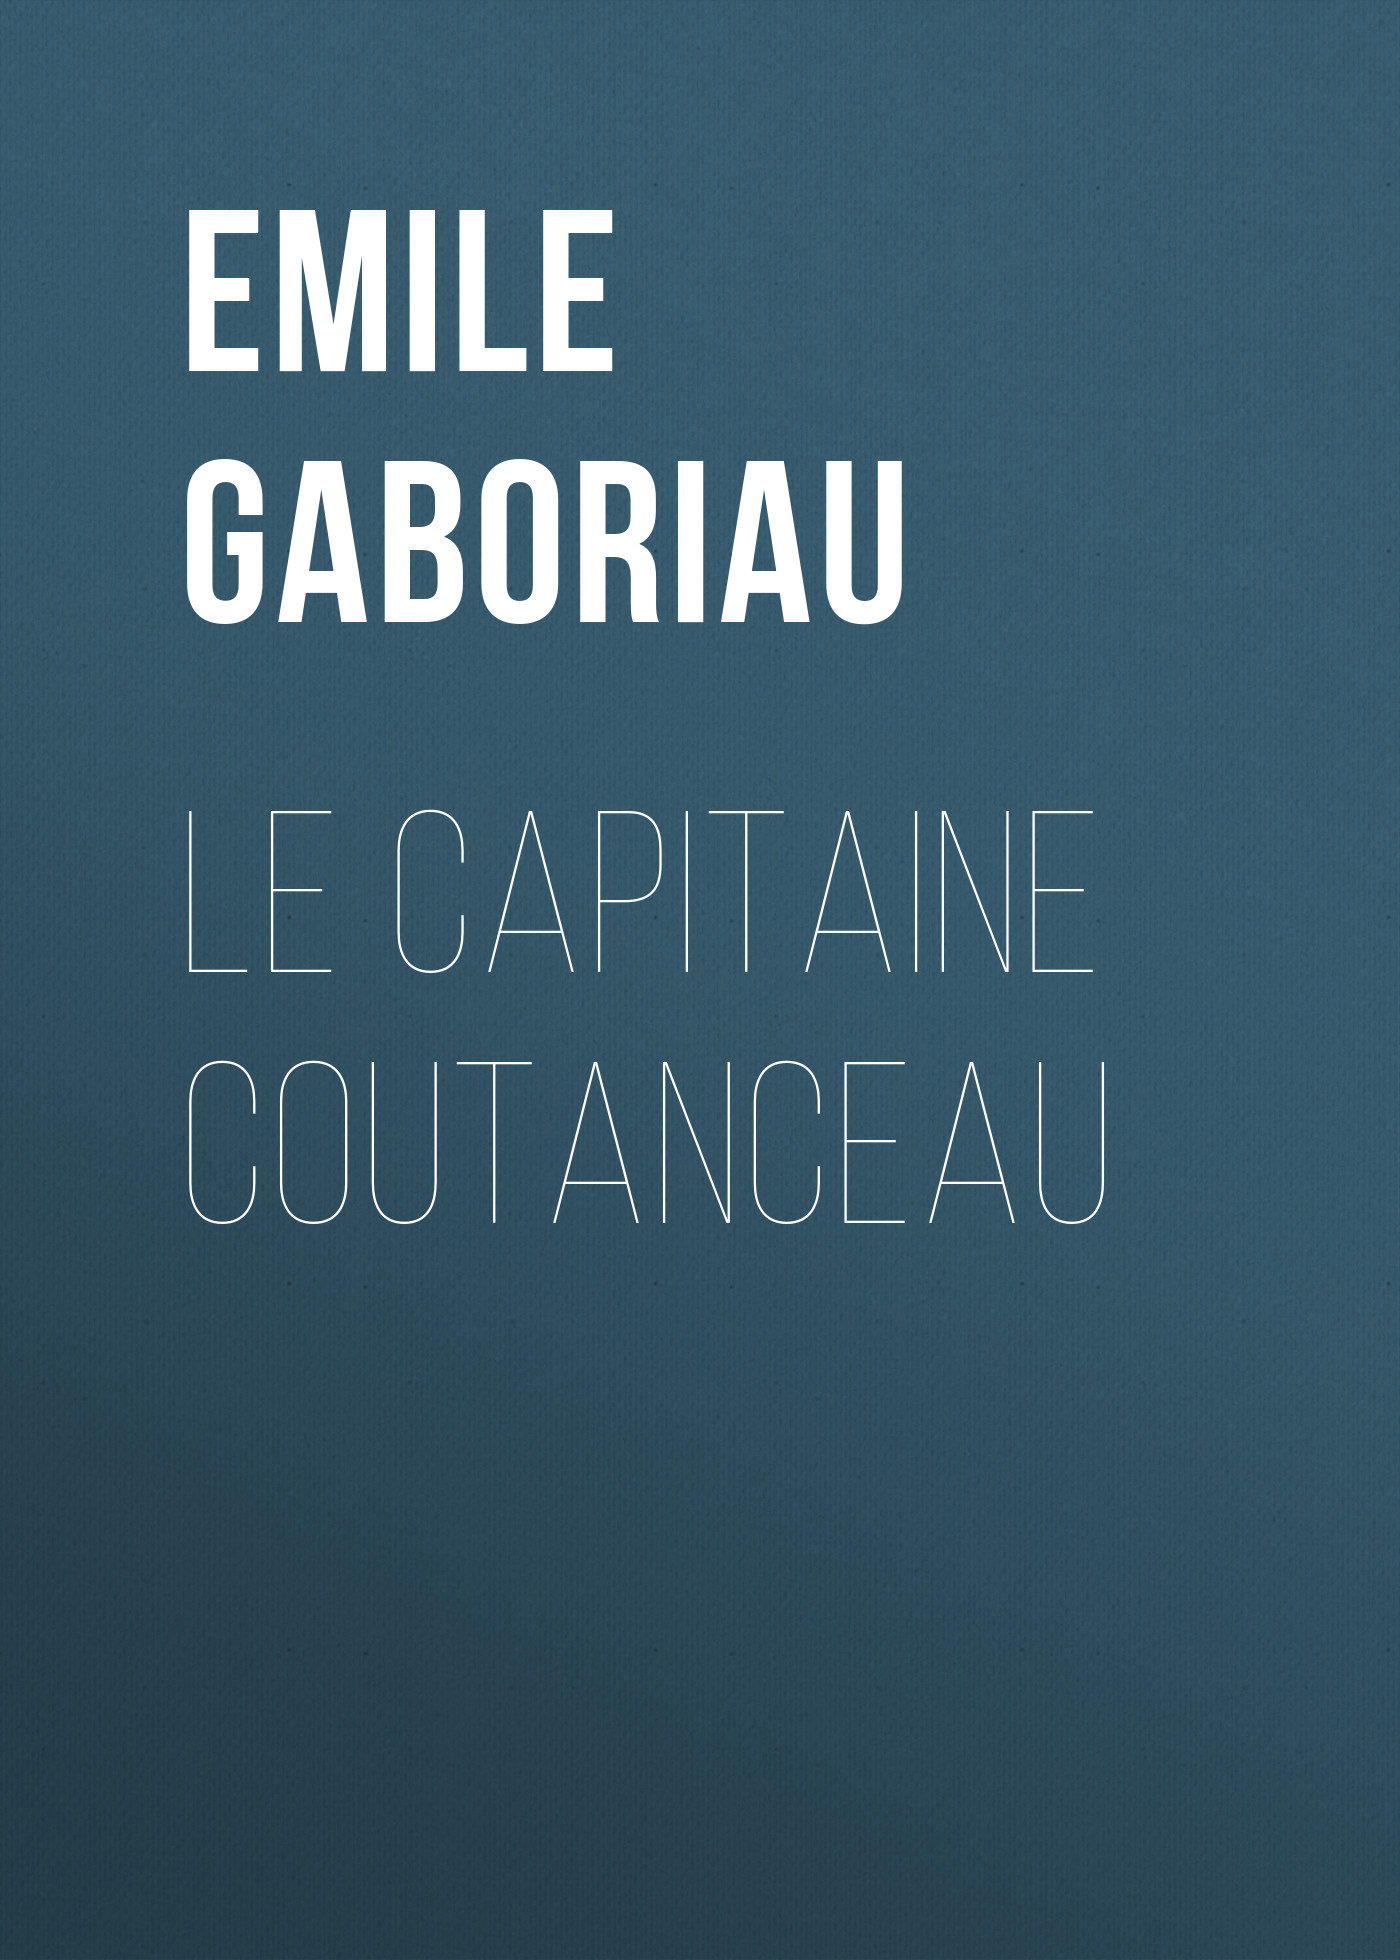 Книга Le capitaine Coutanceau из серии , созданная Emile Gaboriau, может относится к жанру Зарубежная старинная литература, Зарубежная классика. Стоимость электронной книги Le capitaine Coutanceau с идентификатором 24860363 составляет 0 руб.